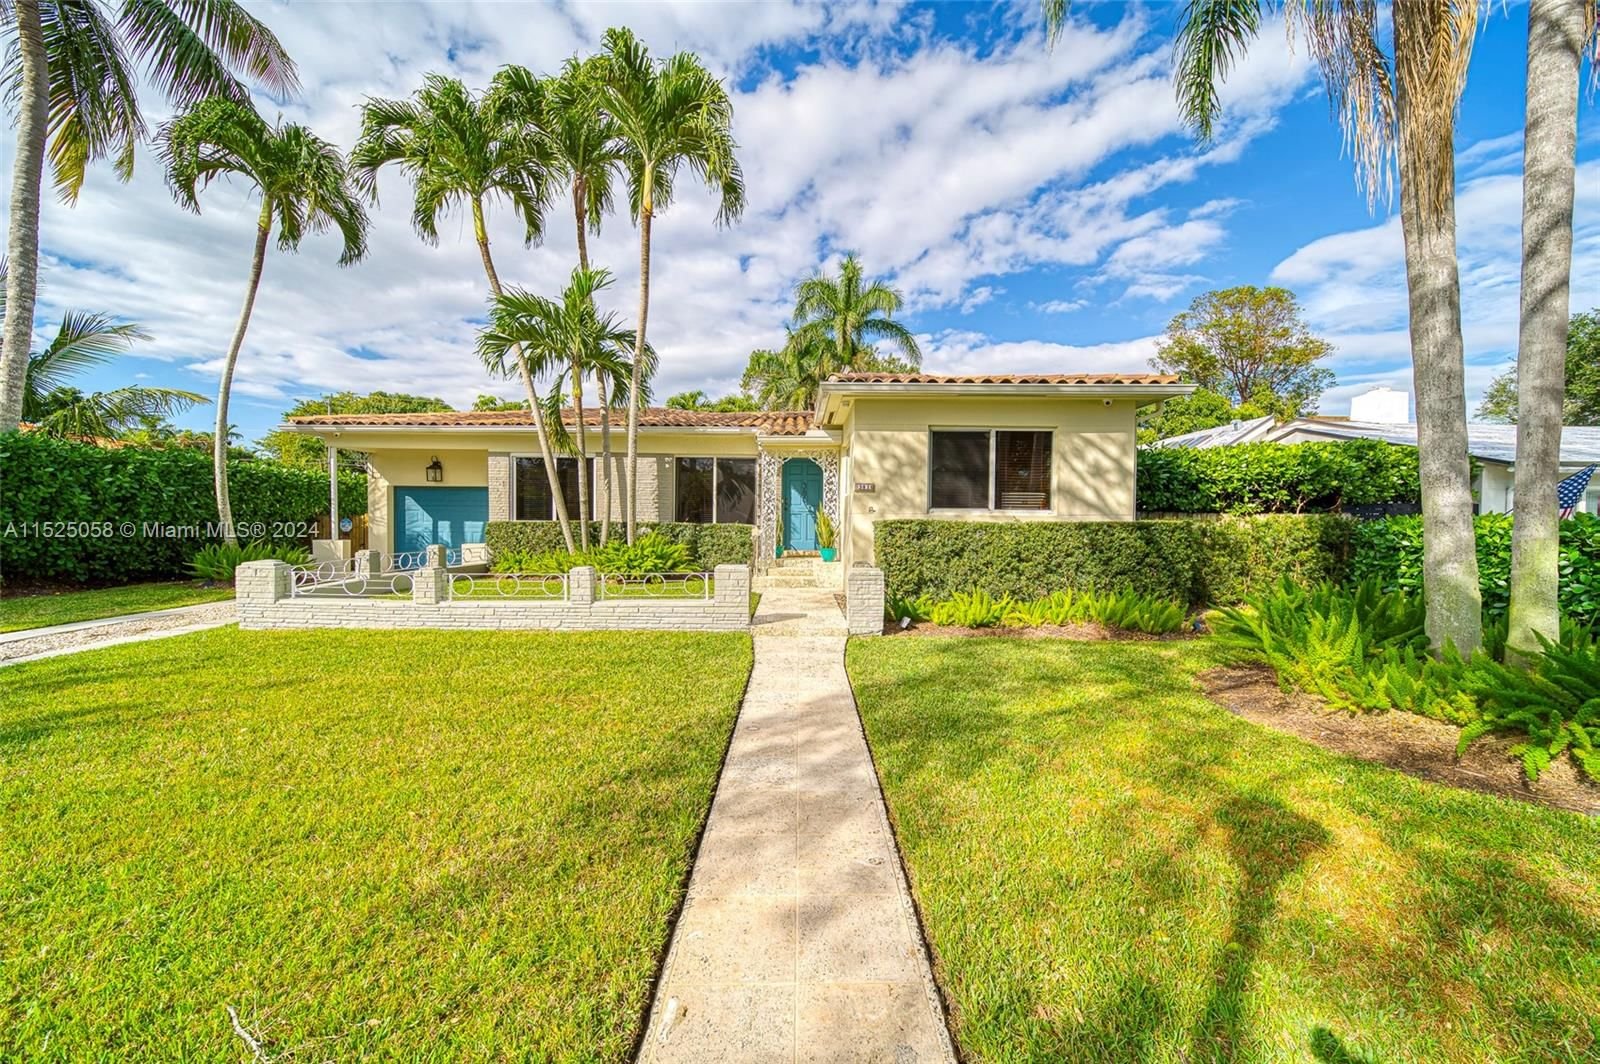 Real estate property located at 381 103rd St, Miami-Dade County, MIAMI SHORES SEC 5, Miami Shores, FL